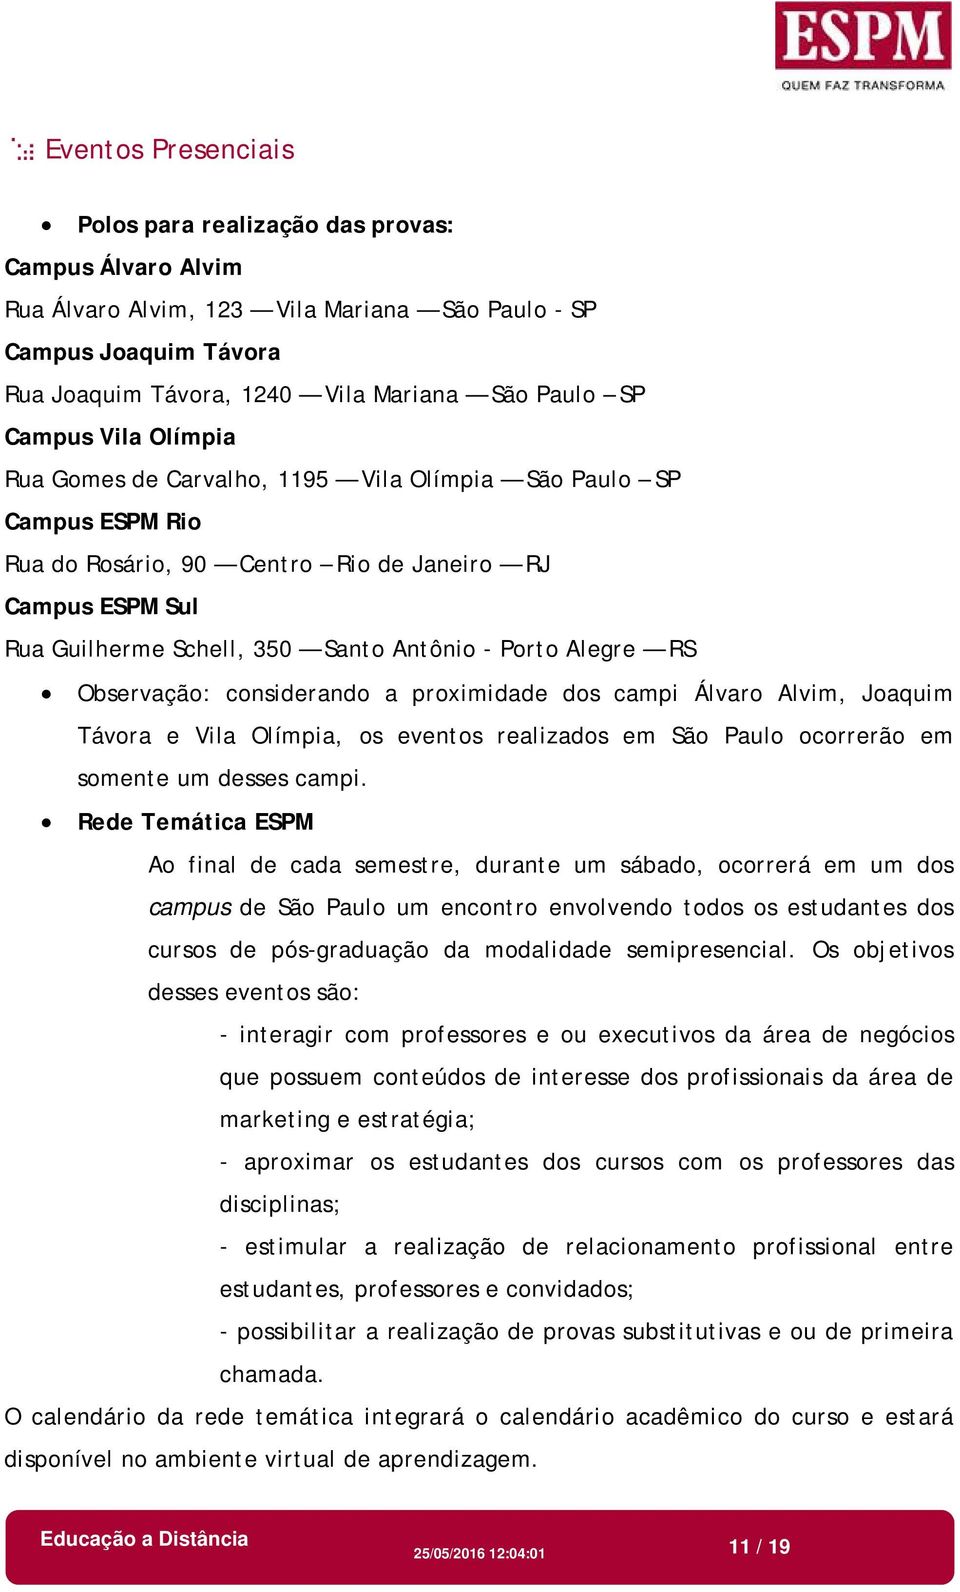 Alegre RS Observação: considerando a proximidade dos campi Álvaro Alvim, Joaquim Távora e Vila Olímpia, os eventos realizados em São Paulo ocorrerão em somente um desses campi.